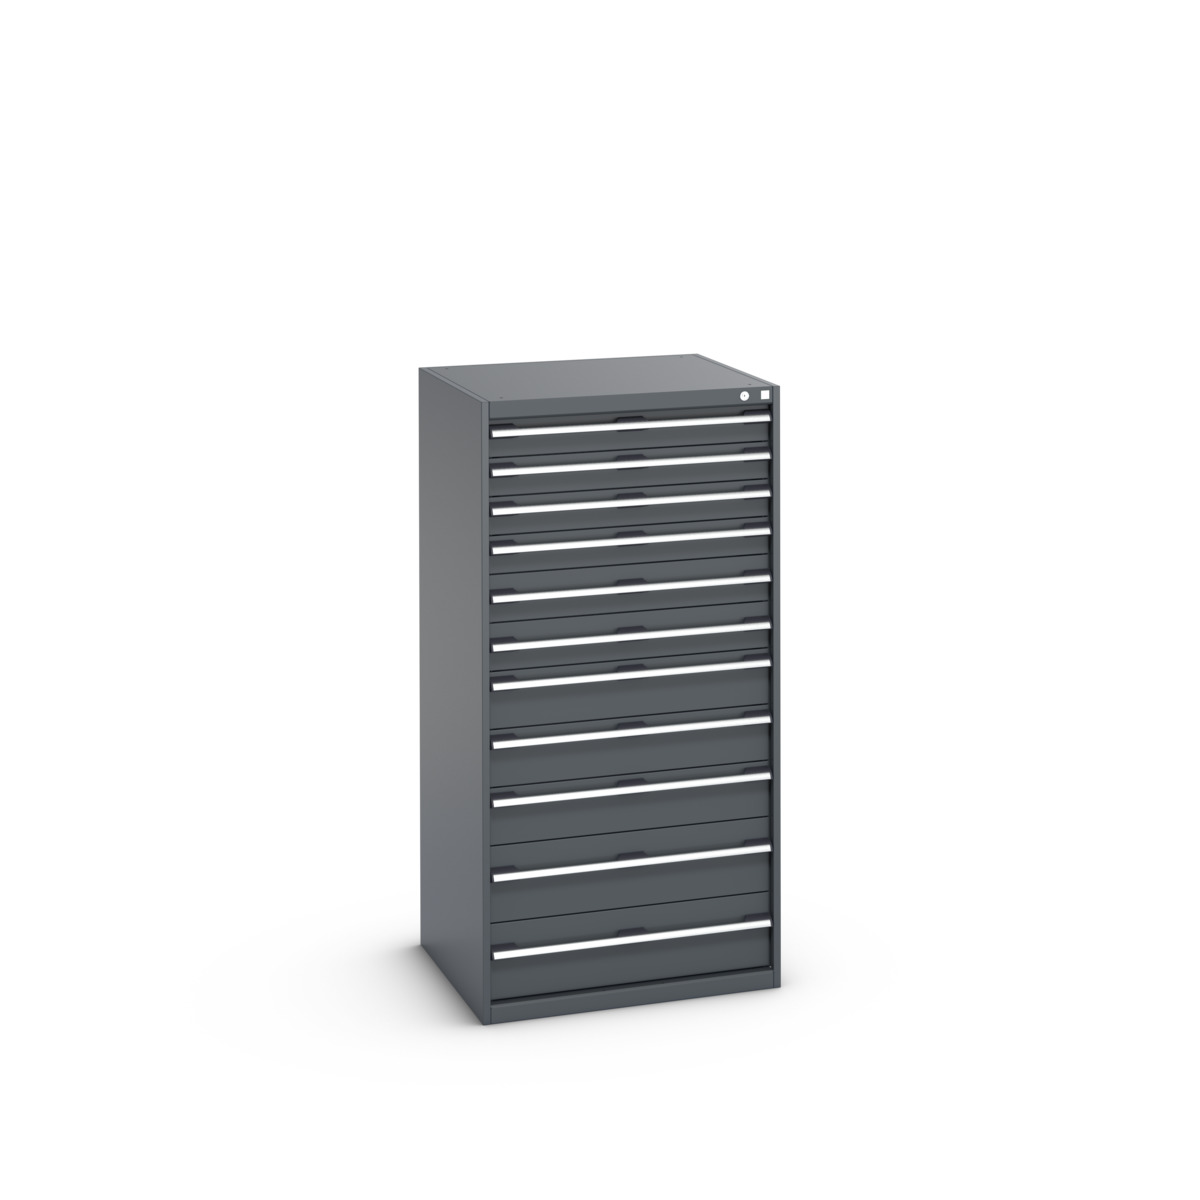 40028041.77V - cubio drawer cabinet